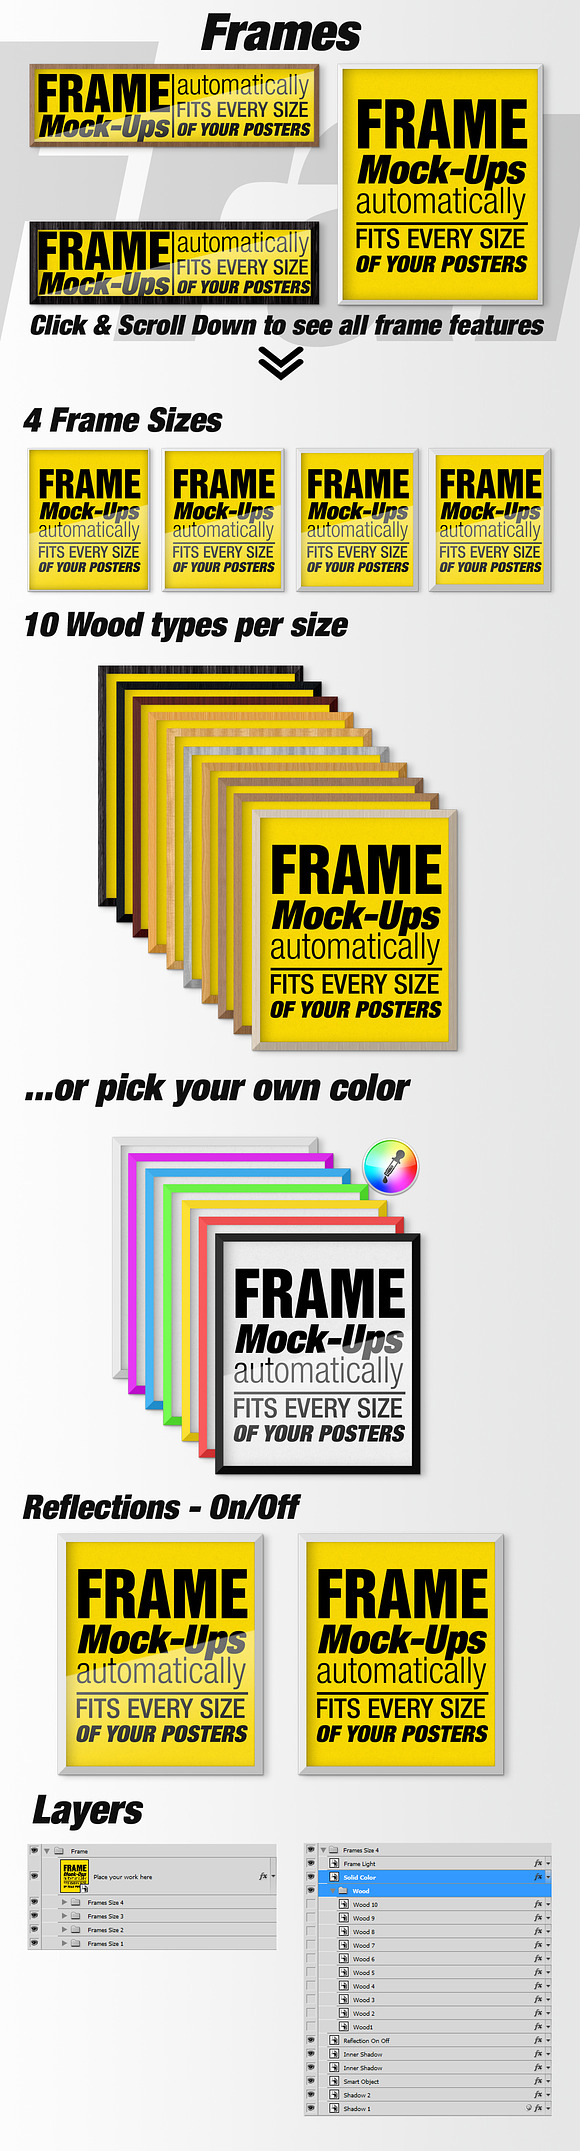 Canvas Mockups - Frames Mockups v 55 in Print Mockups - product preview 6